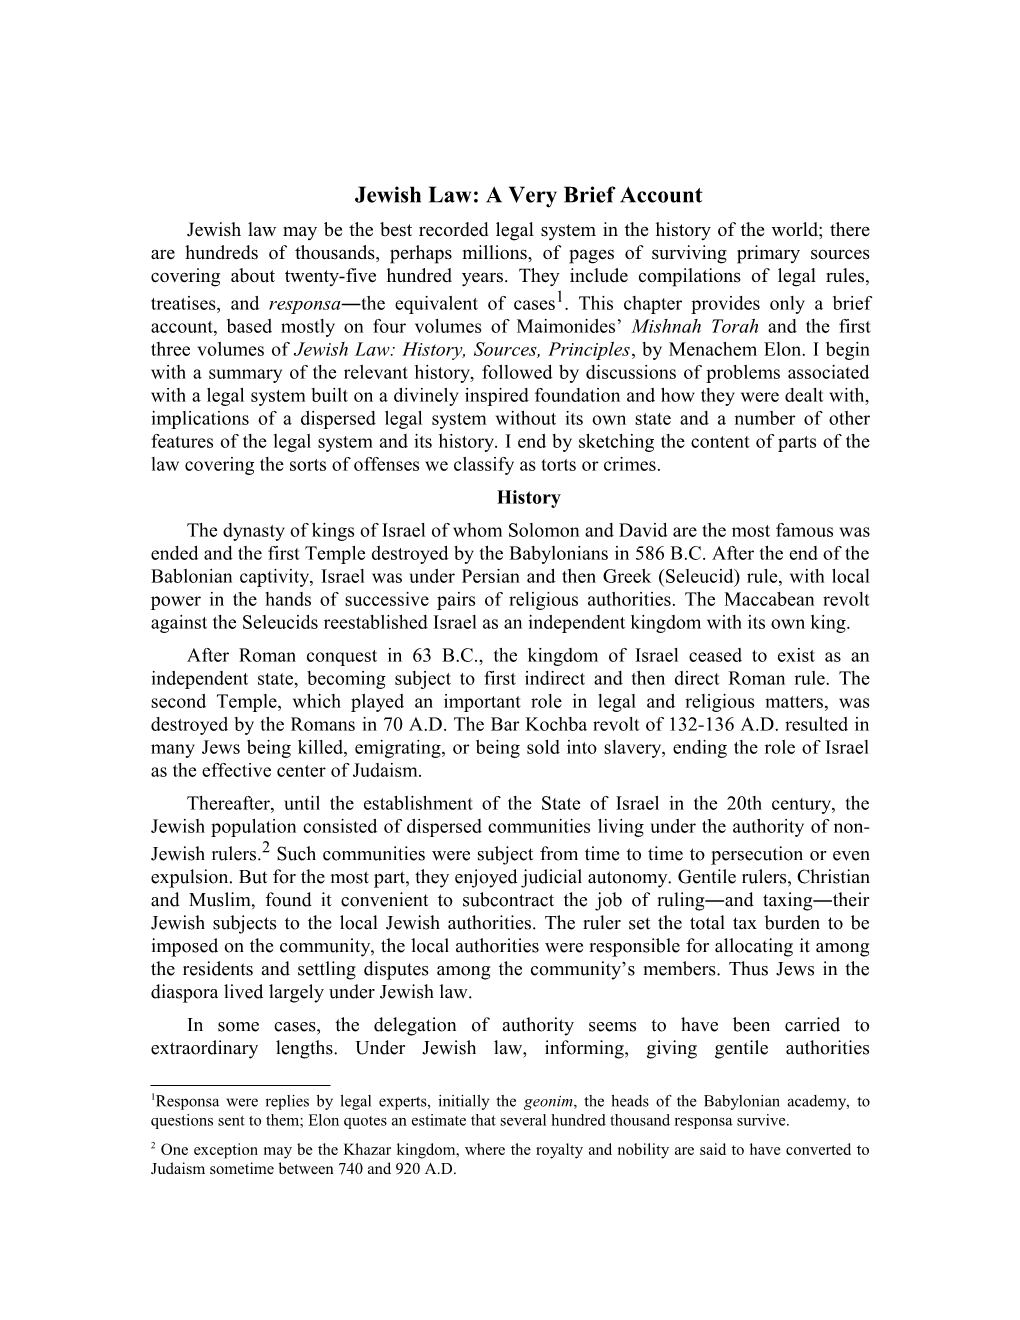 Jewish Law: a Very Brief Account